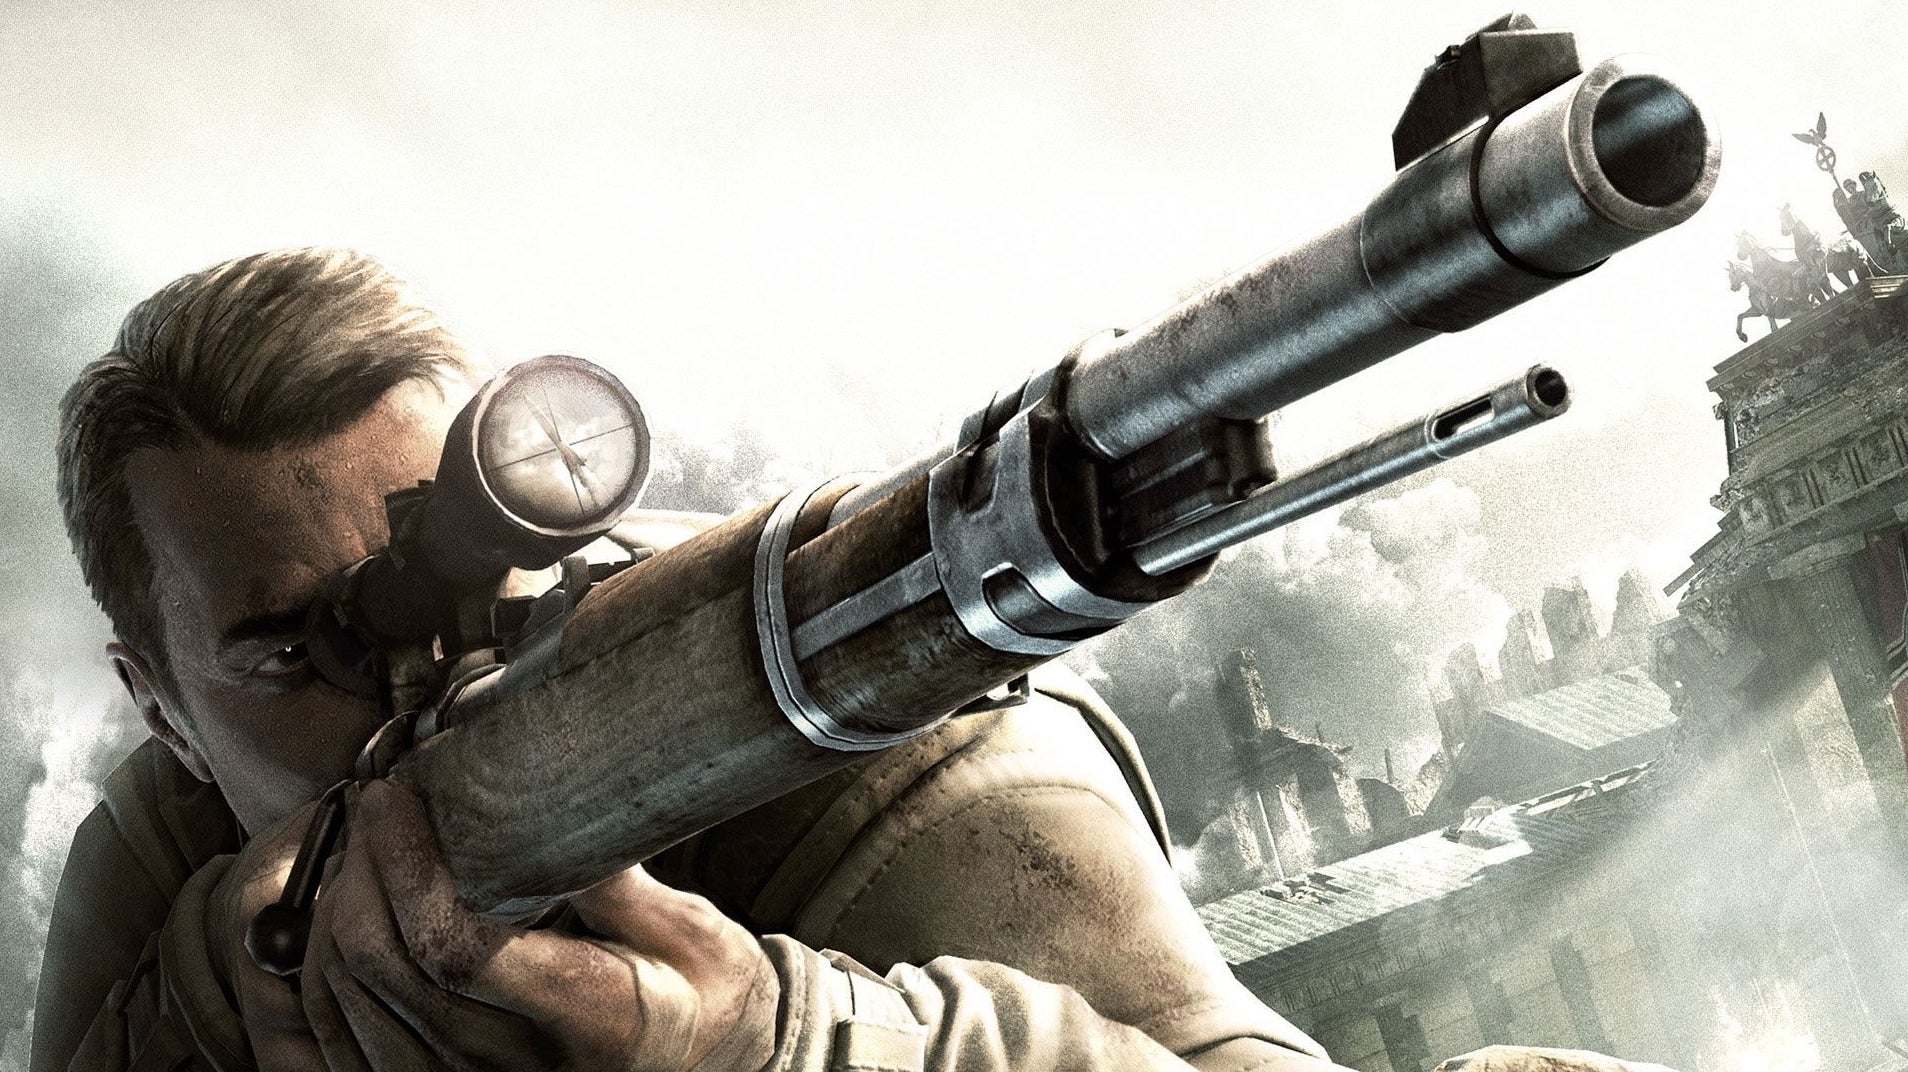 Immagine di Sniper Elite V2 Remastered si mette in mostra nel trailer di lancio